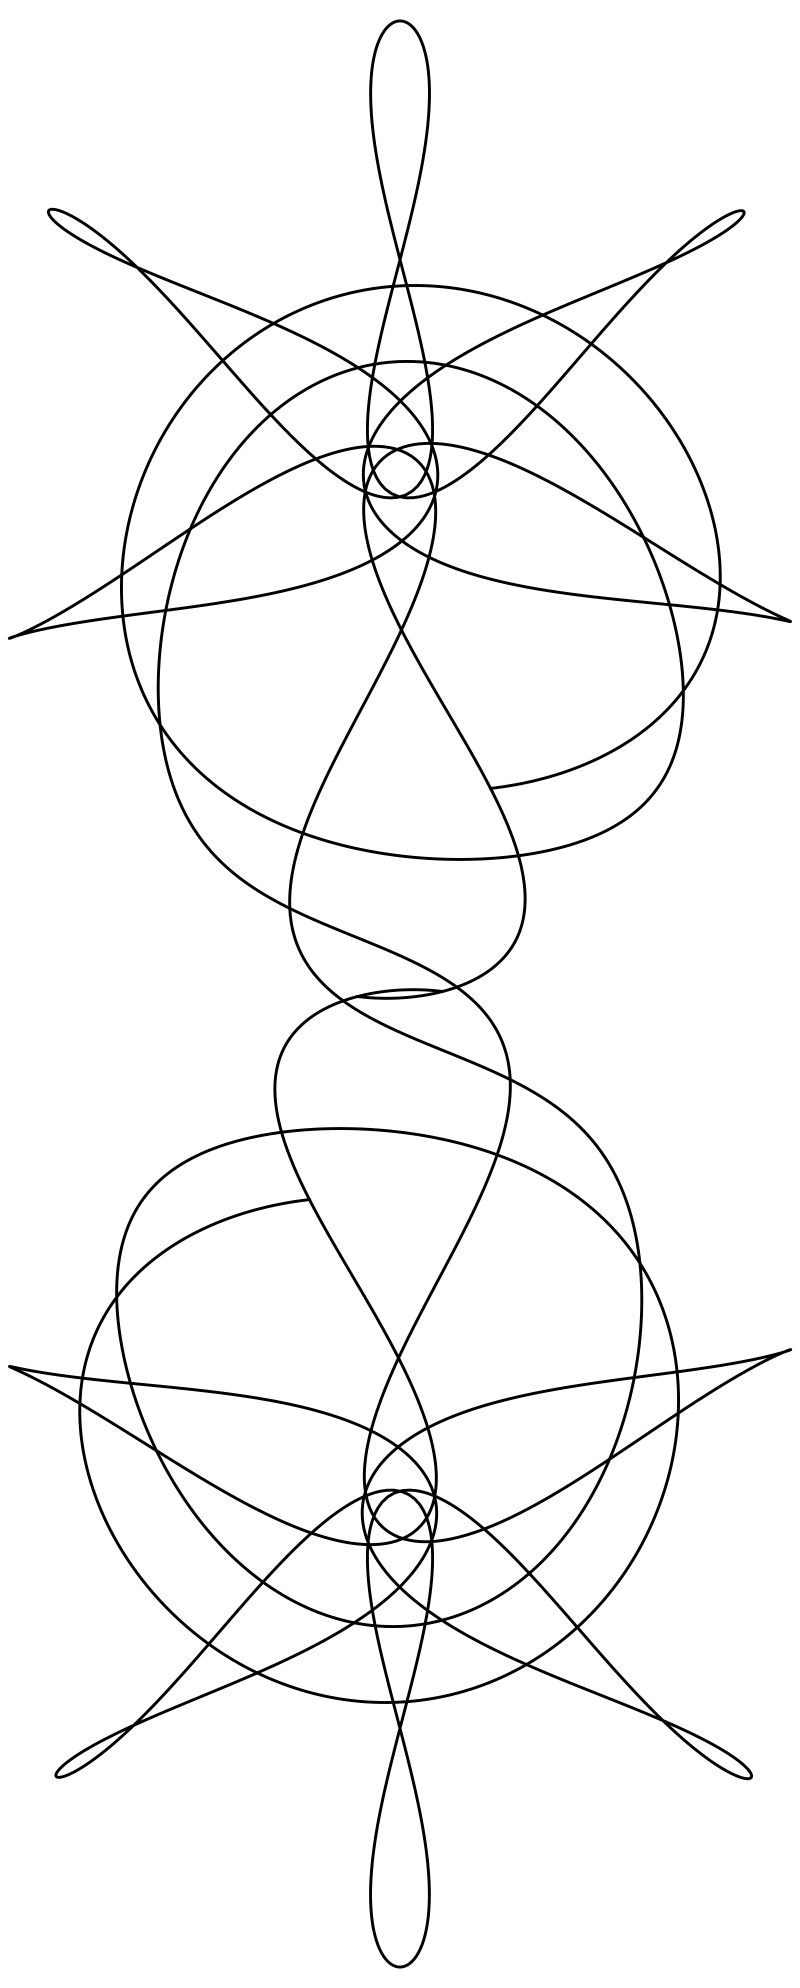 Раскраска - Математические фигуры - Орбиты в круговой задаче с тремя телами